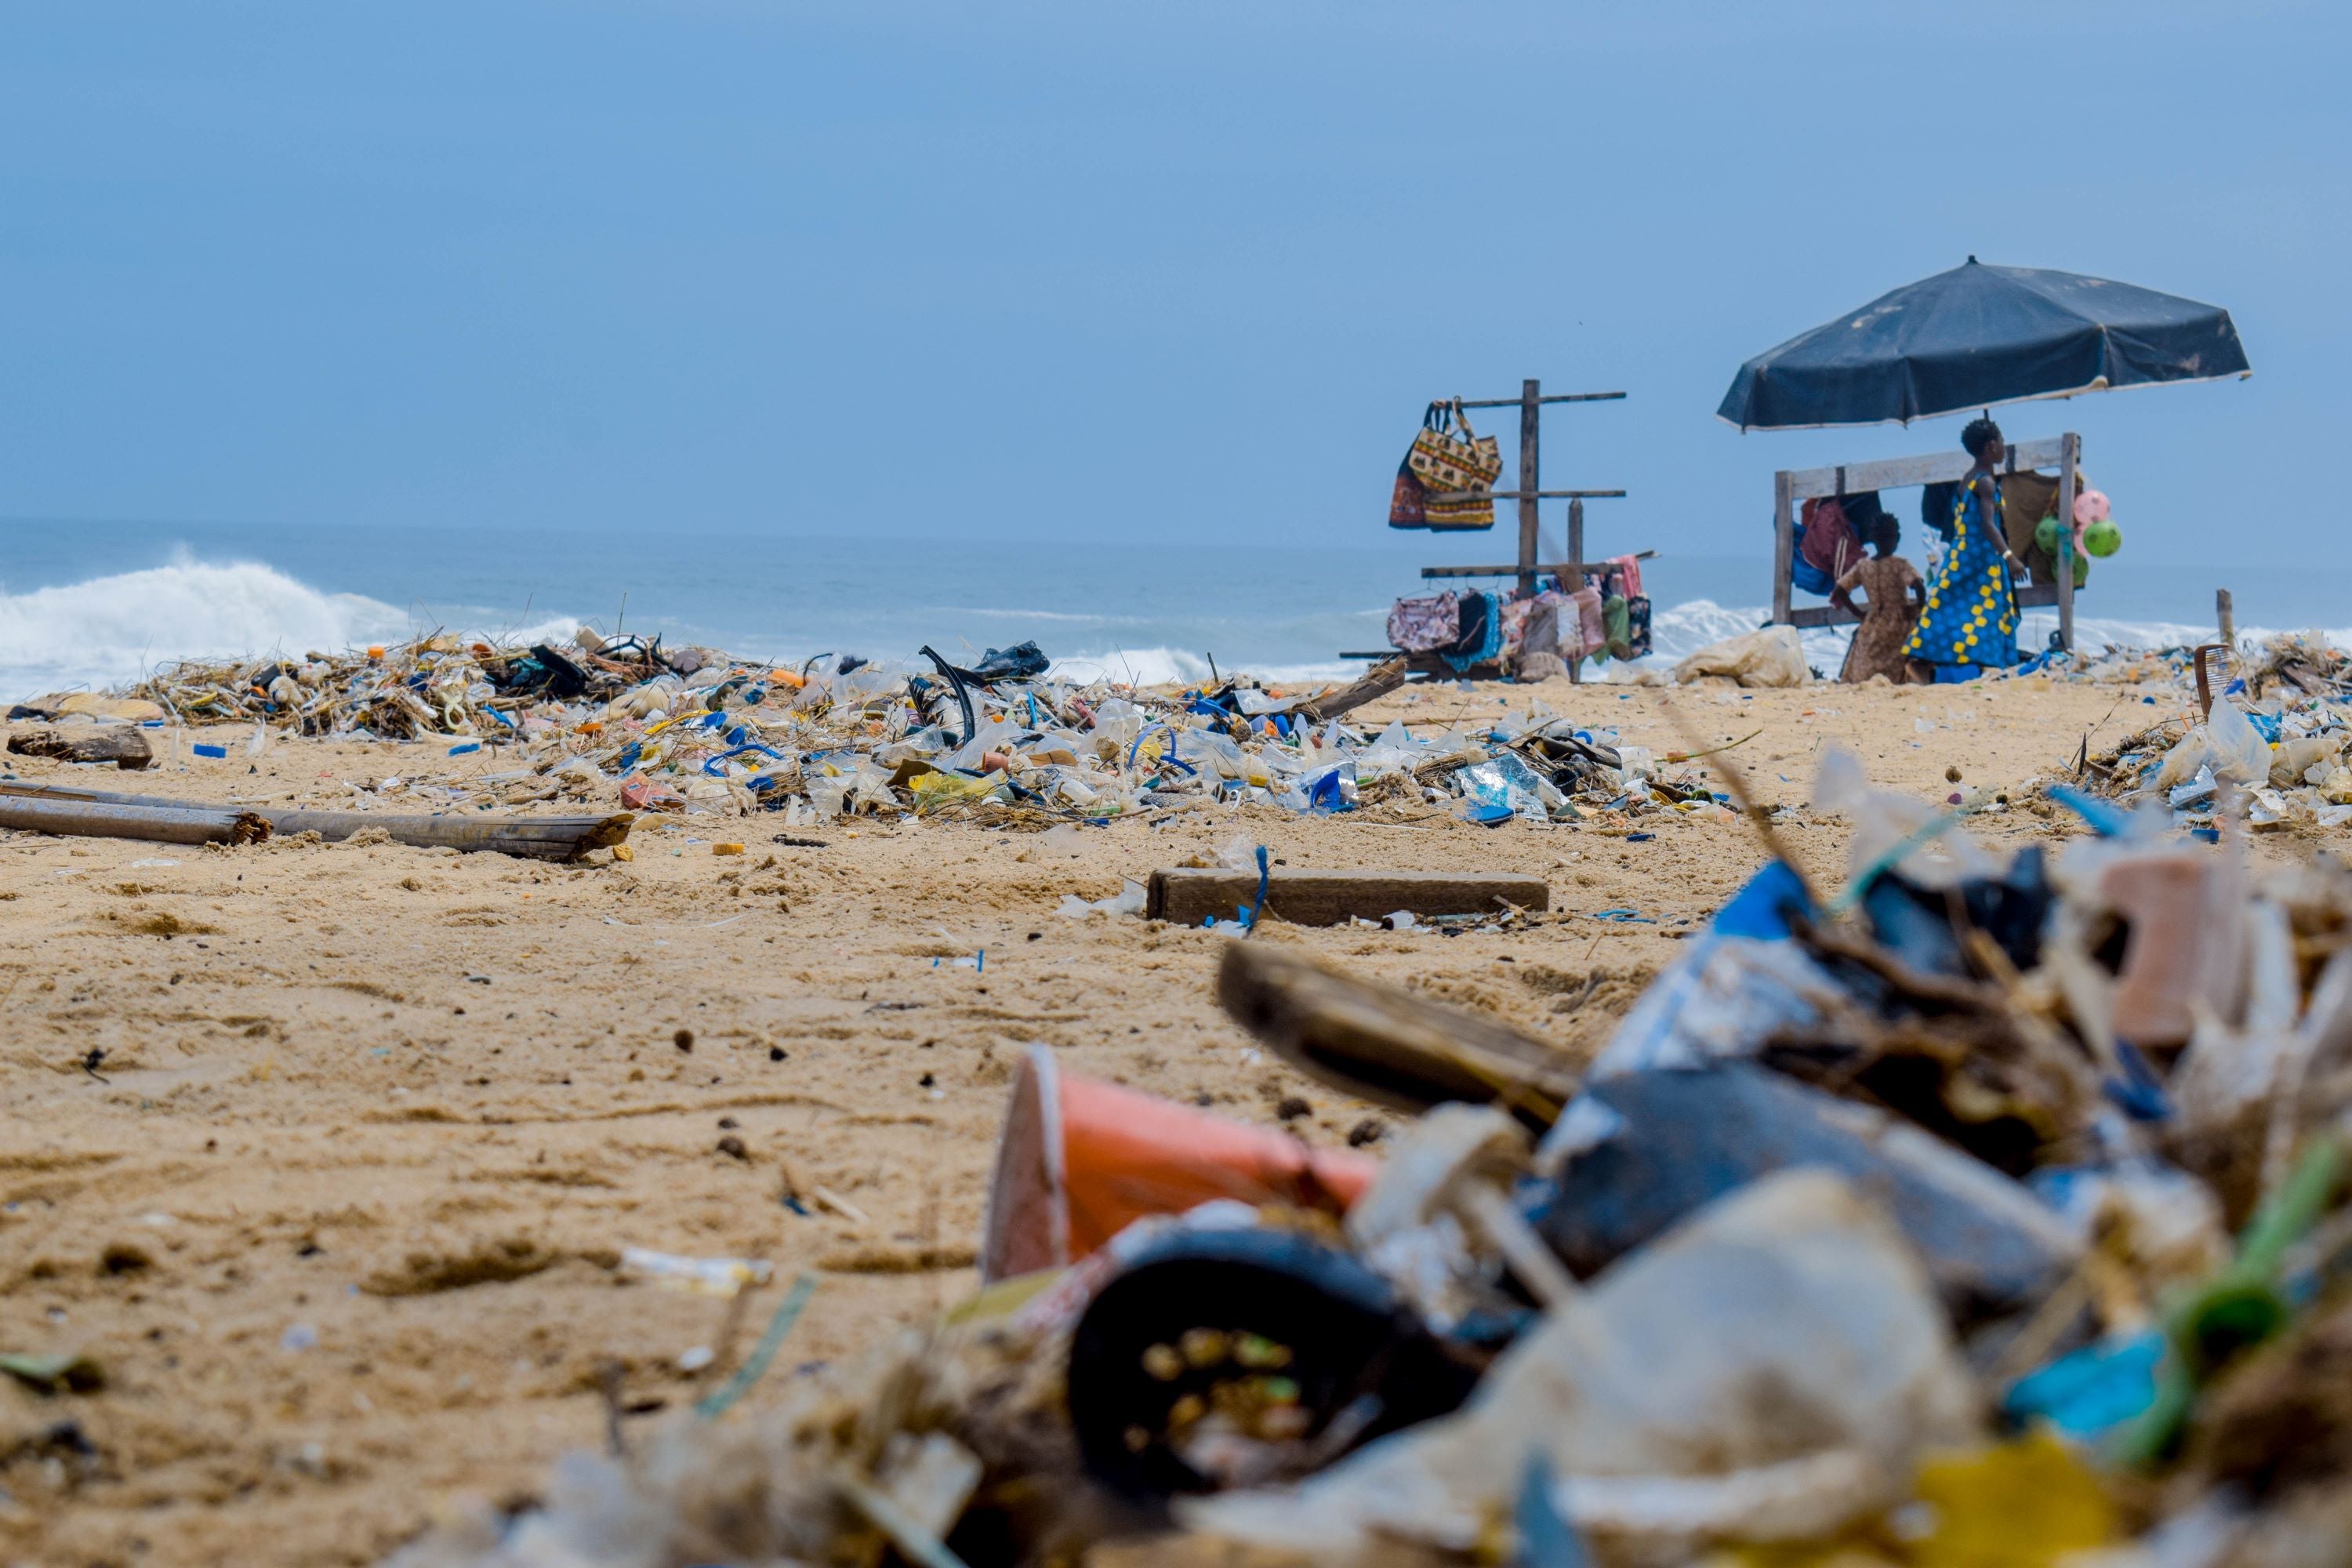 plastic waste in oceans